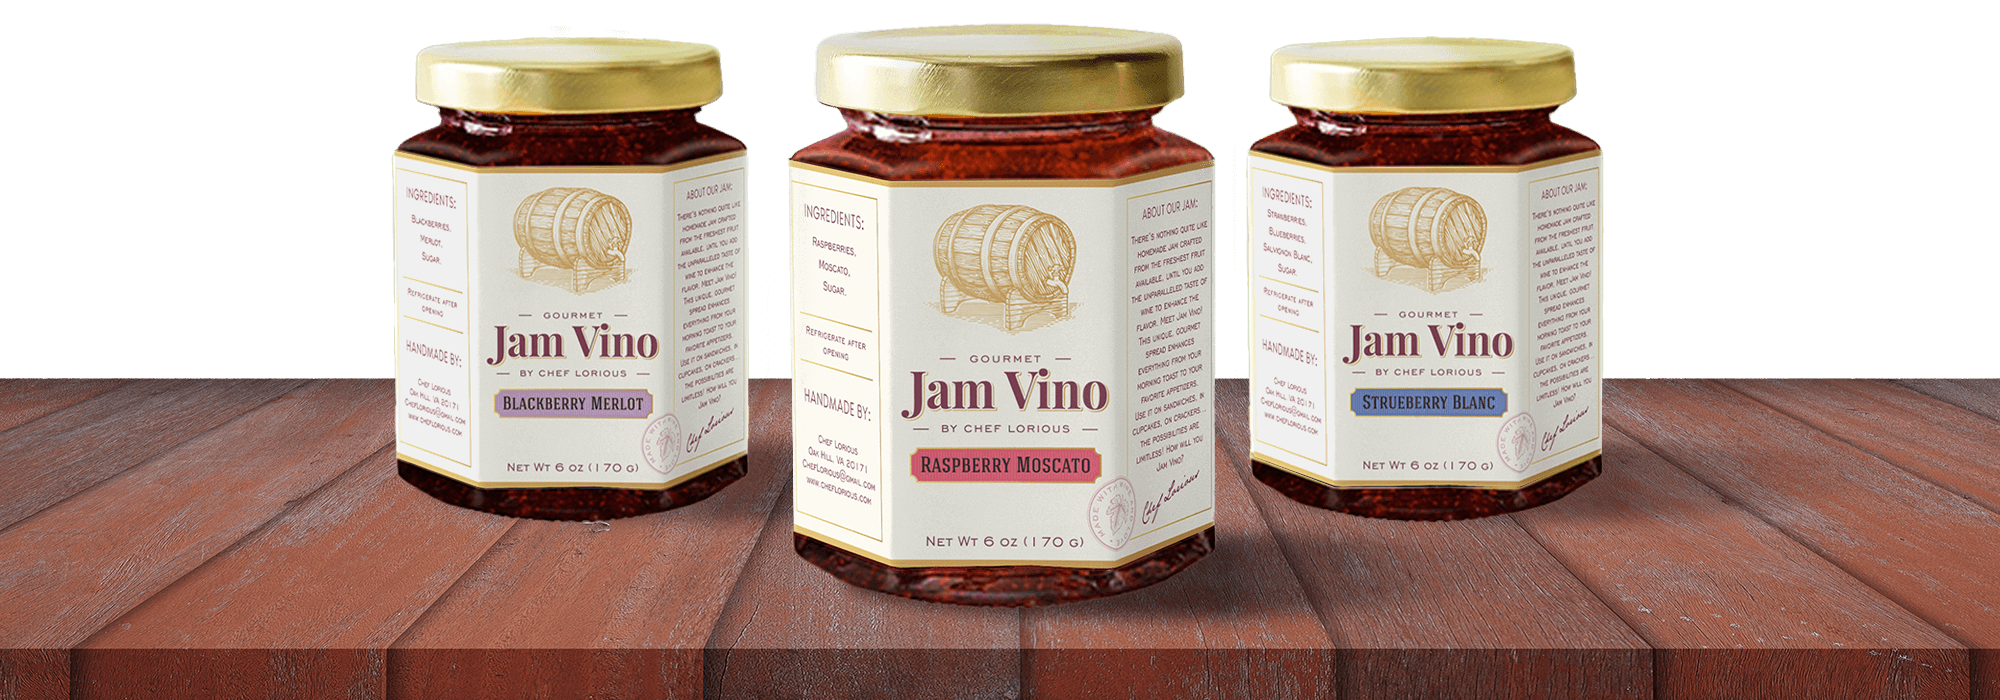 three Jam Vino wine infused jam jars